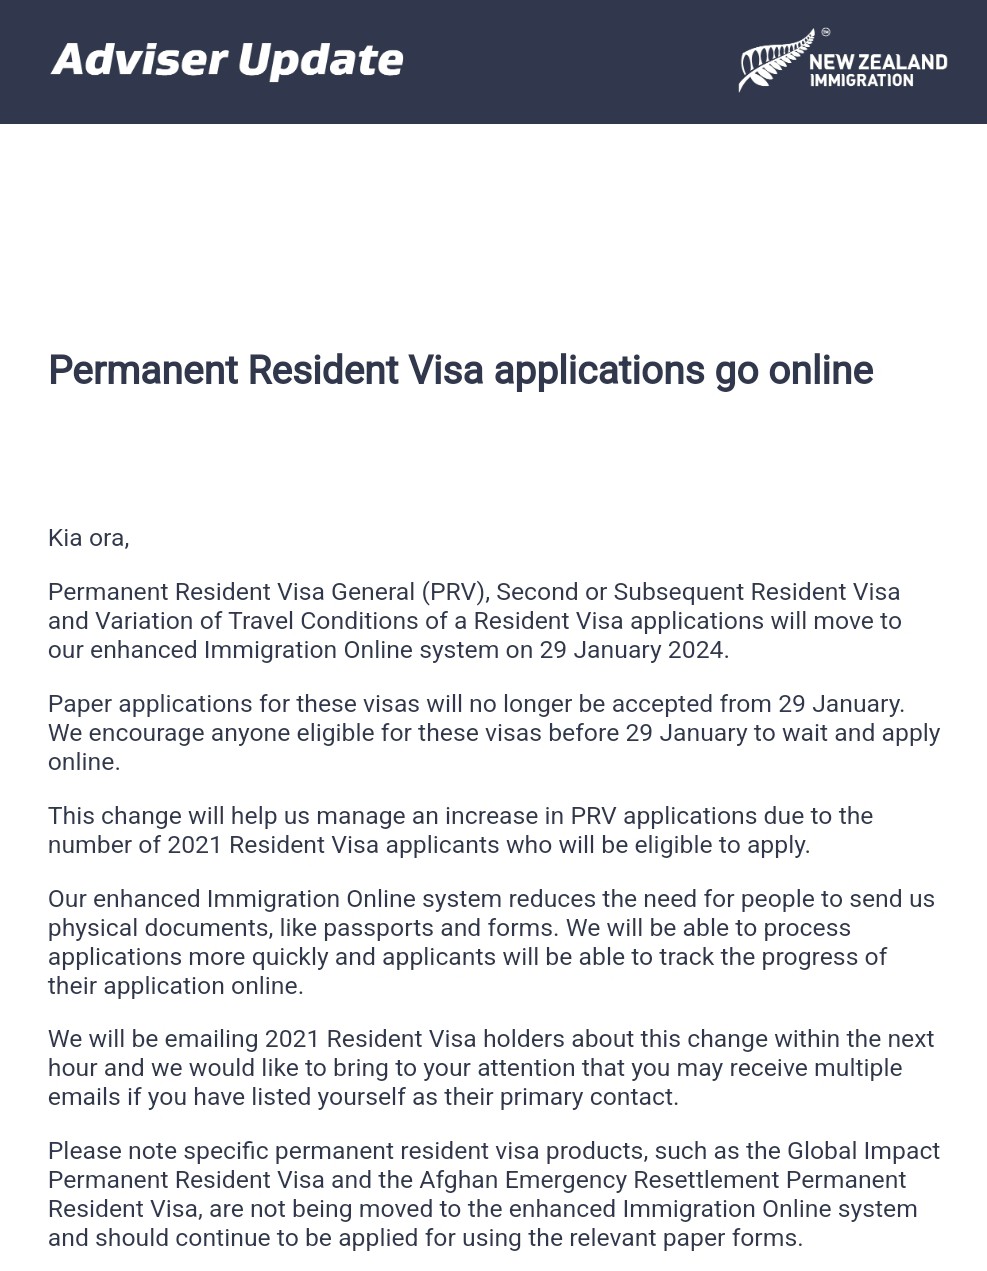 Chuyển hình thức nộp online cho Permanent Resident Visa từ ngày 29/01/2023